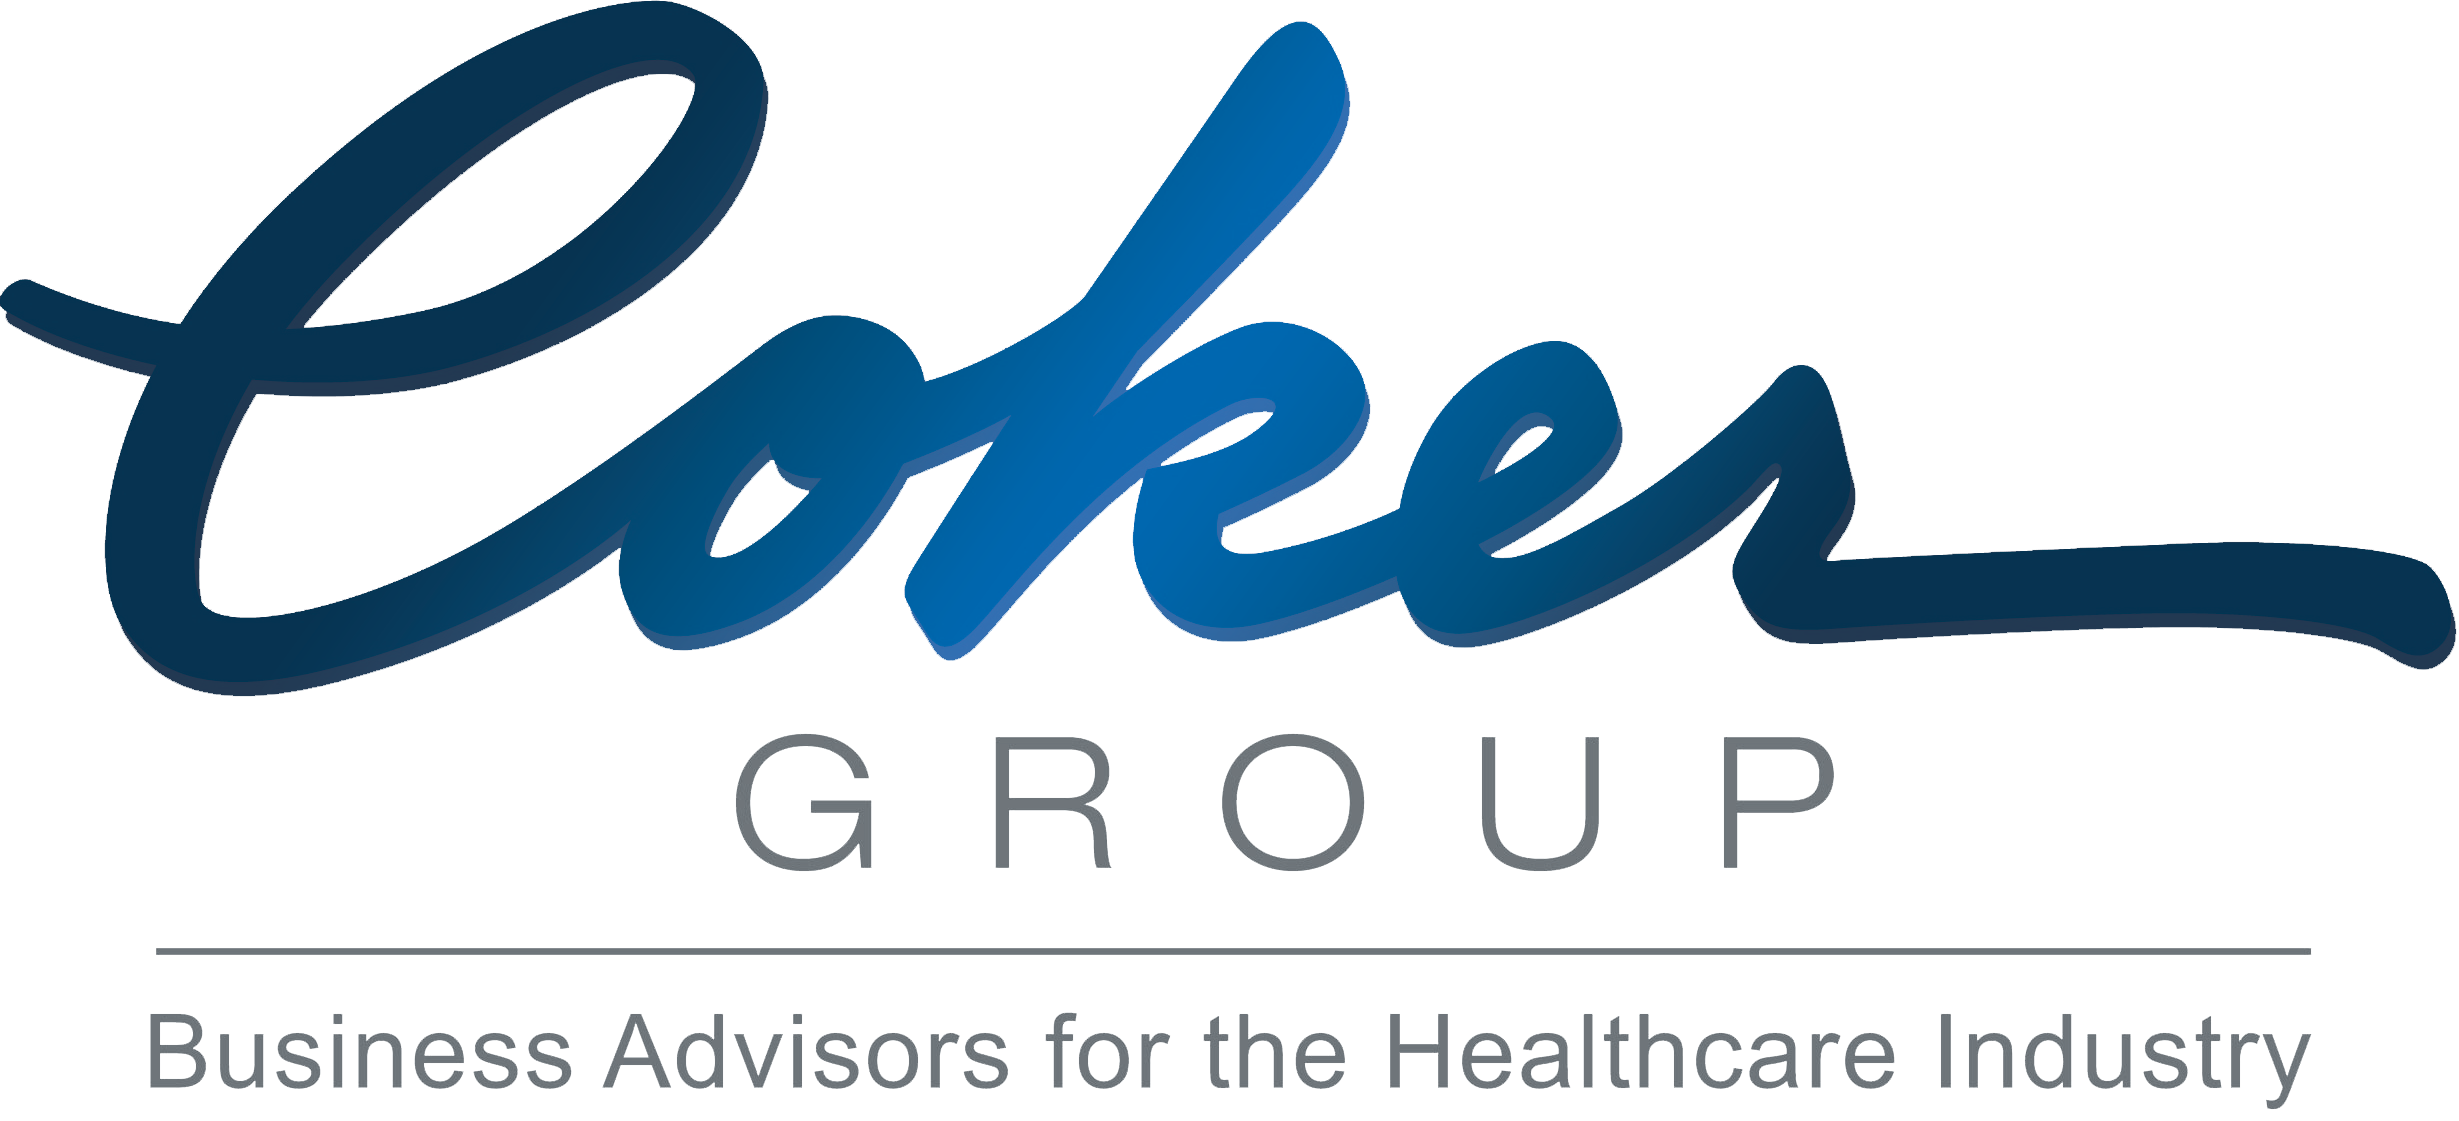 Coker Logo Image